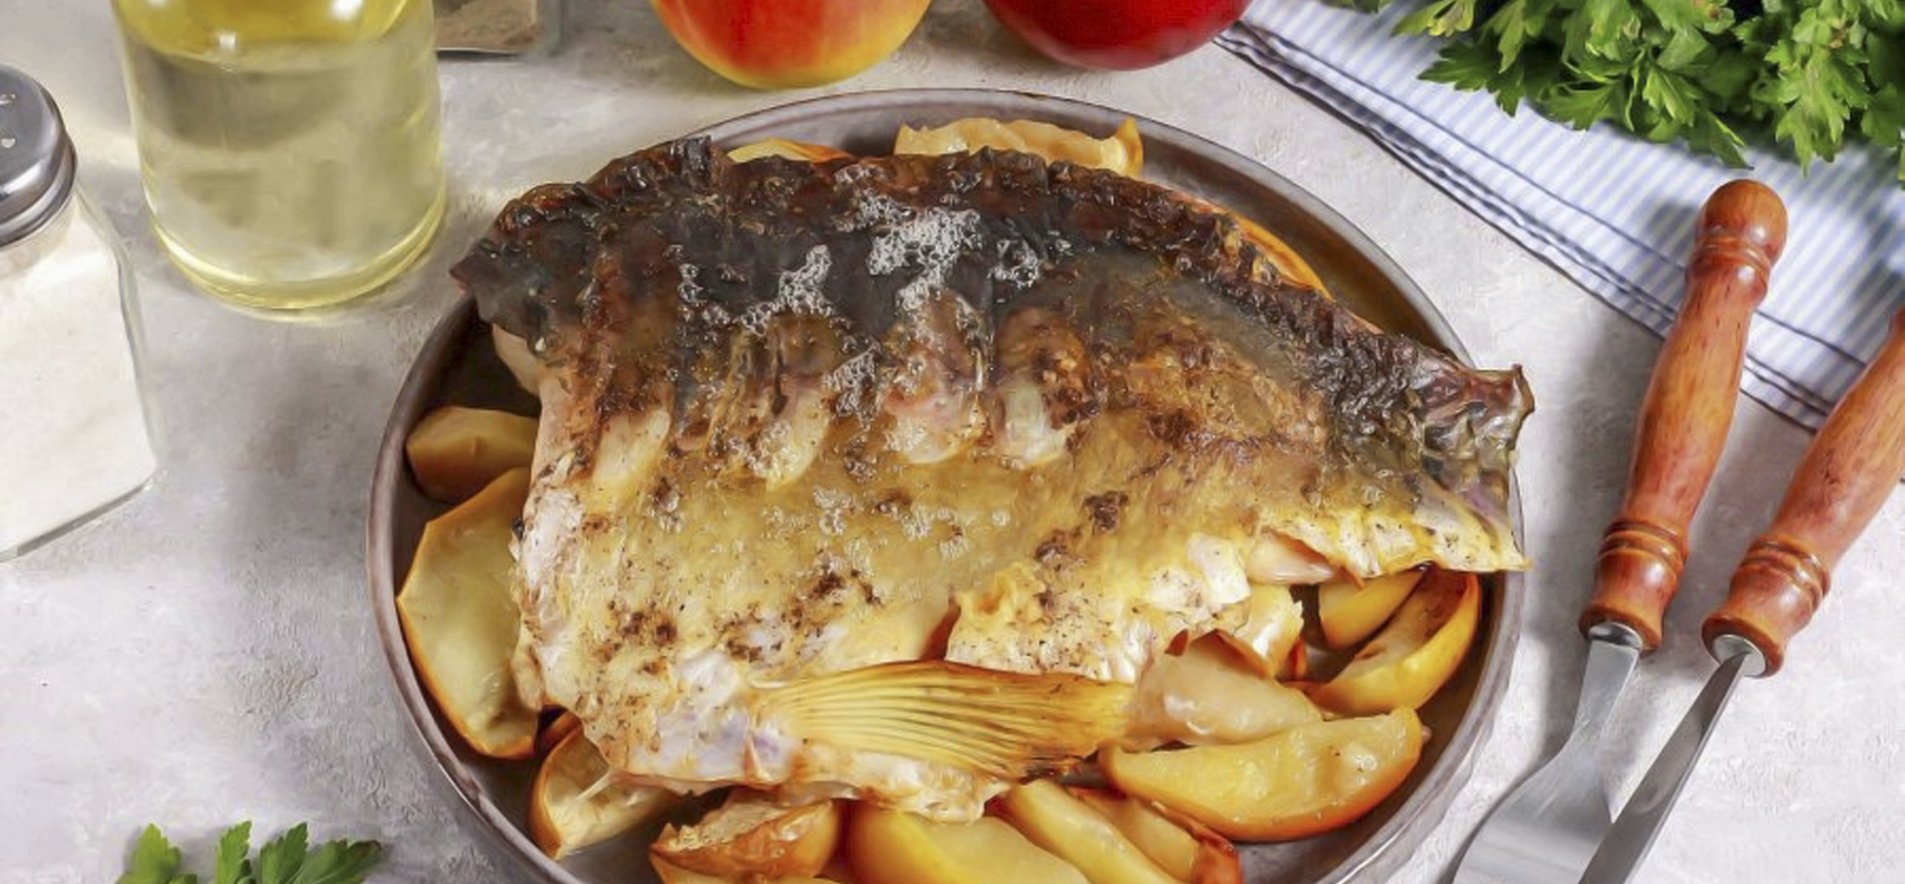 Рецепт: Карп с картошкой запеченный в рукаве - Карп - моя самая любимая рыба